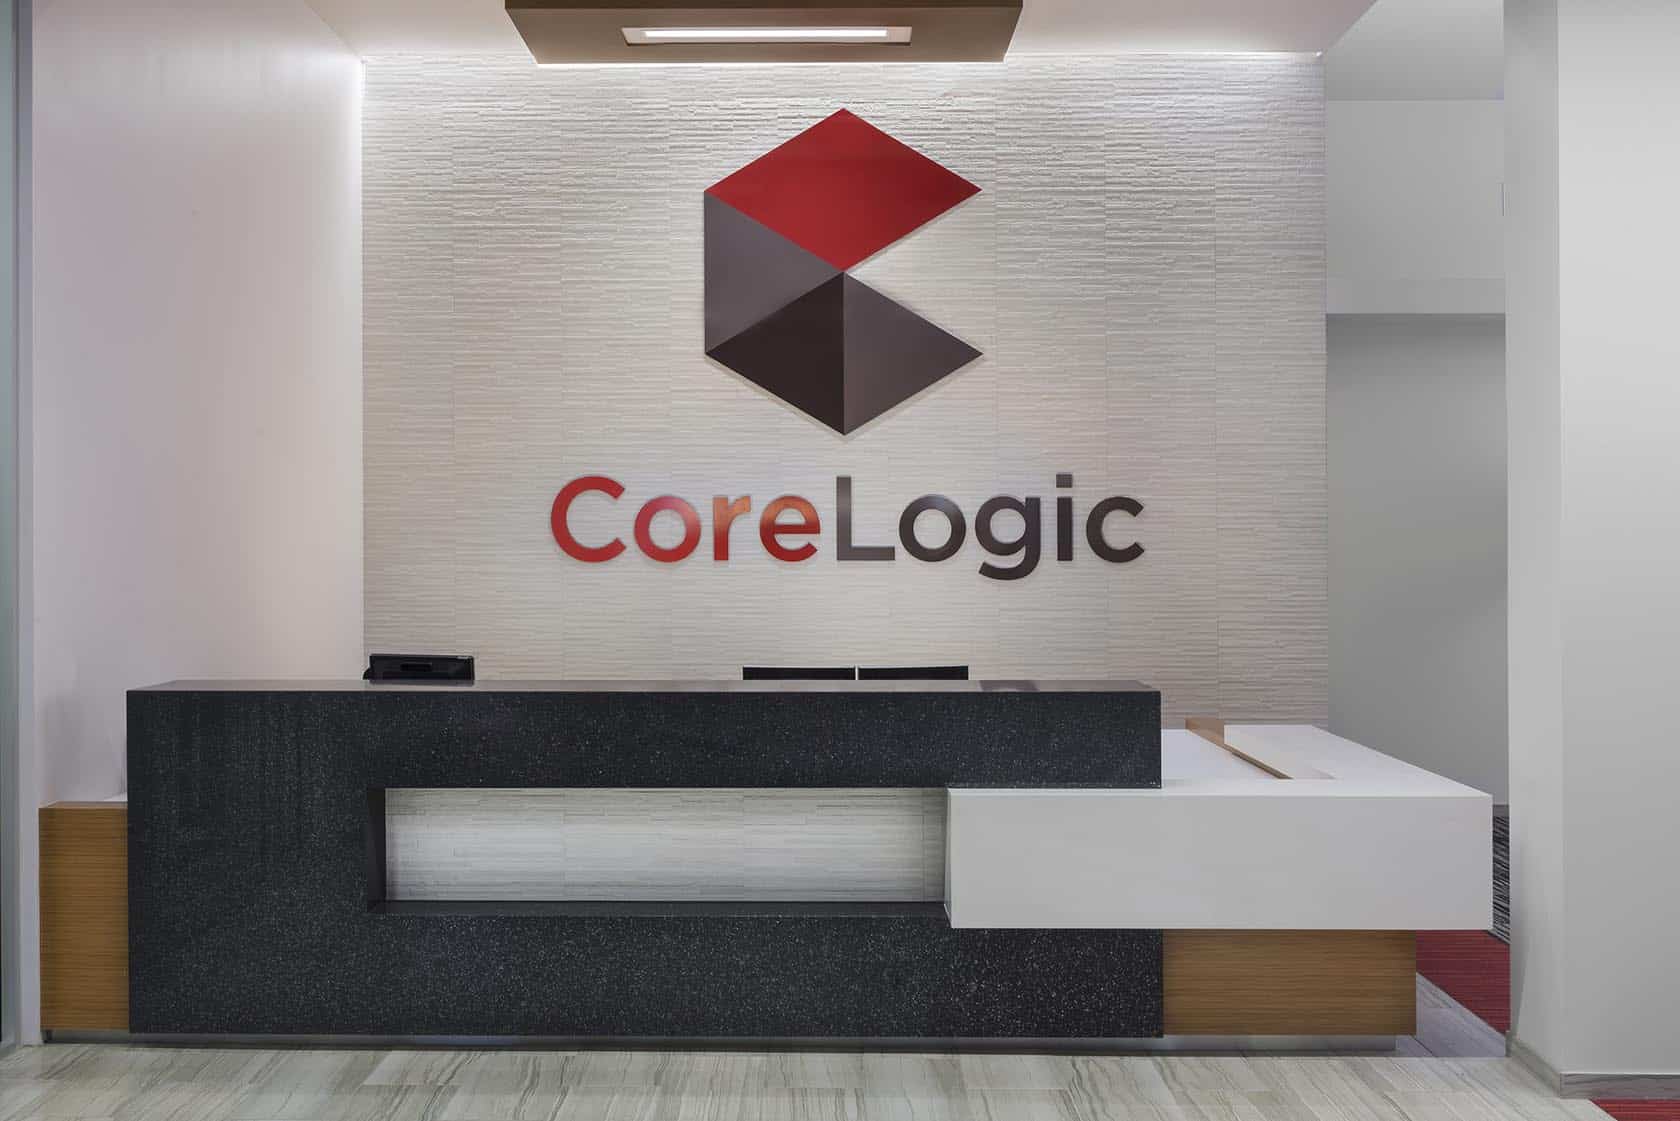 CoreLogic reception desk by ID Studios